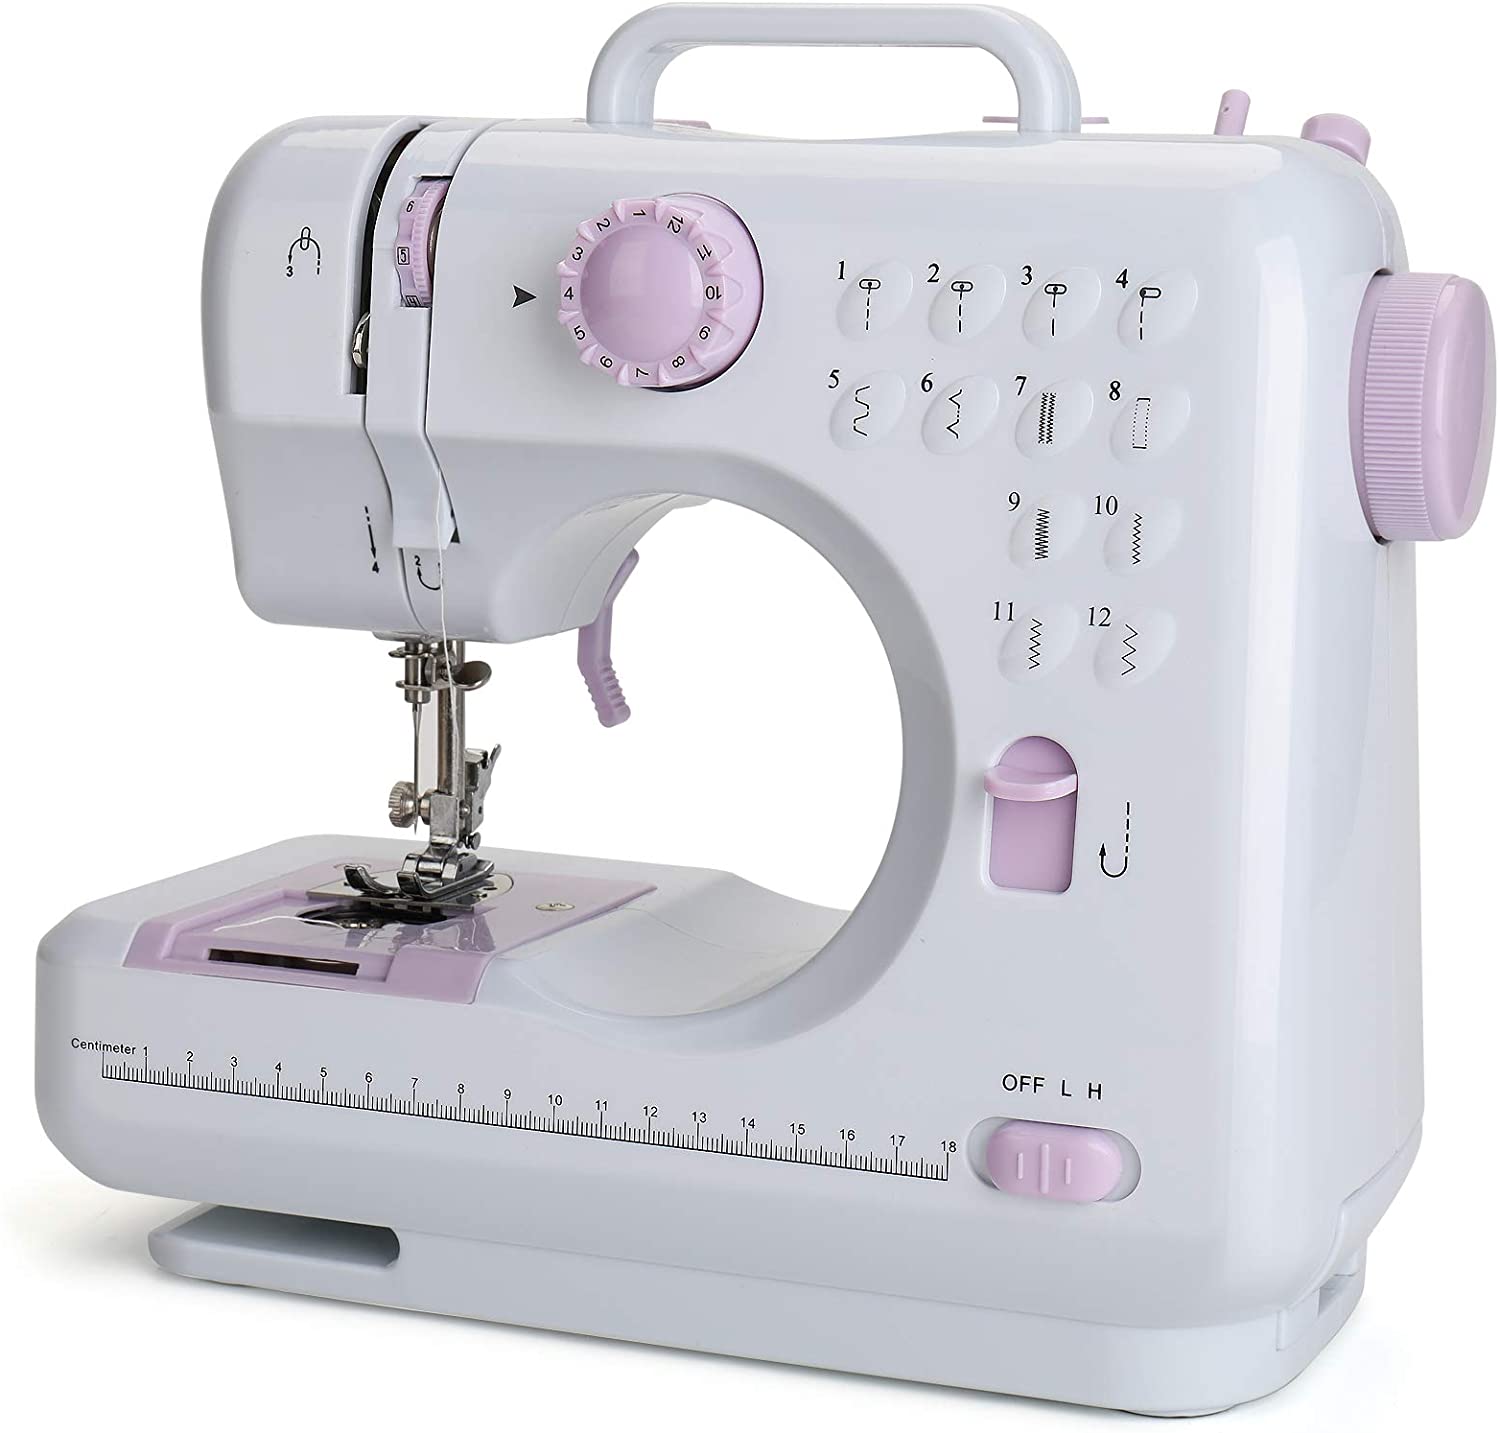 Mending Mini Sewing Machines